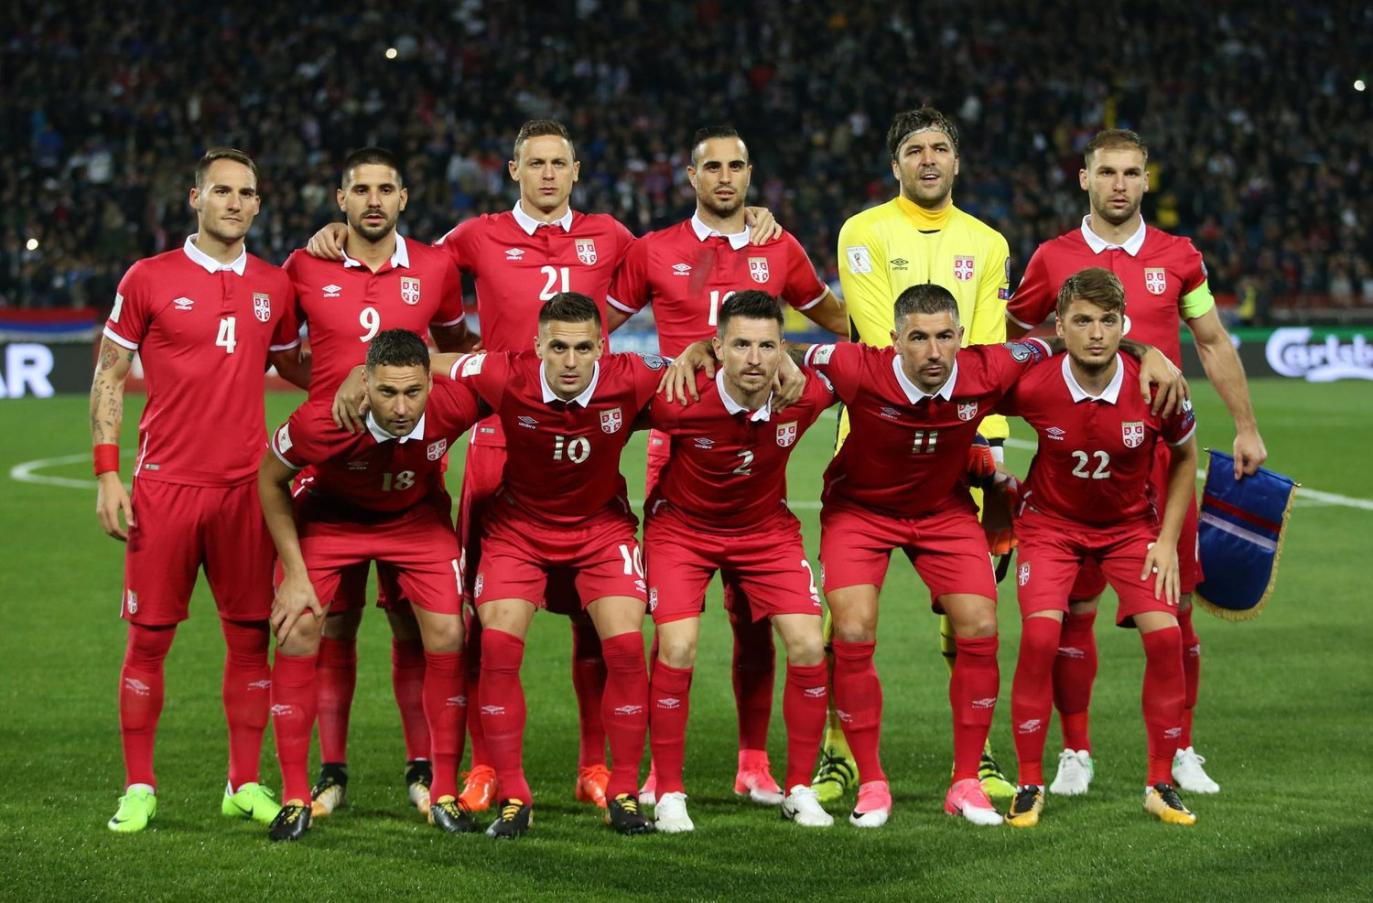 塞尔维亚国家男子足球队直播,莱比锡,沃尔夫斯堡,柏林赫塔,世界杯战报,世界杯